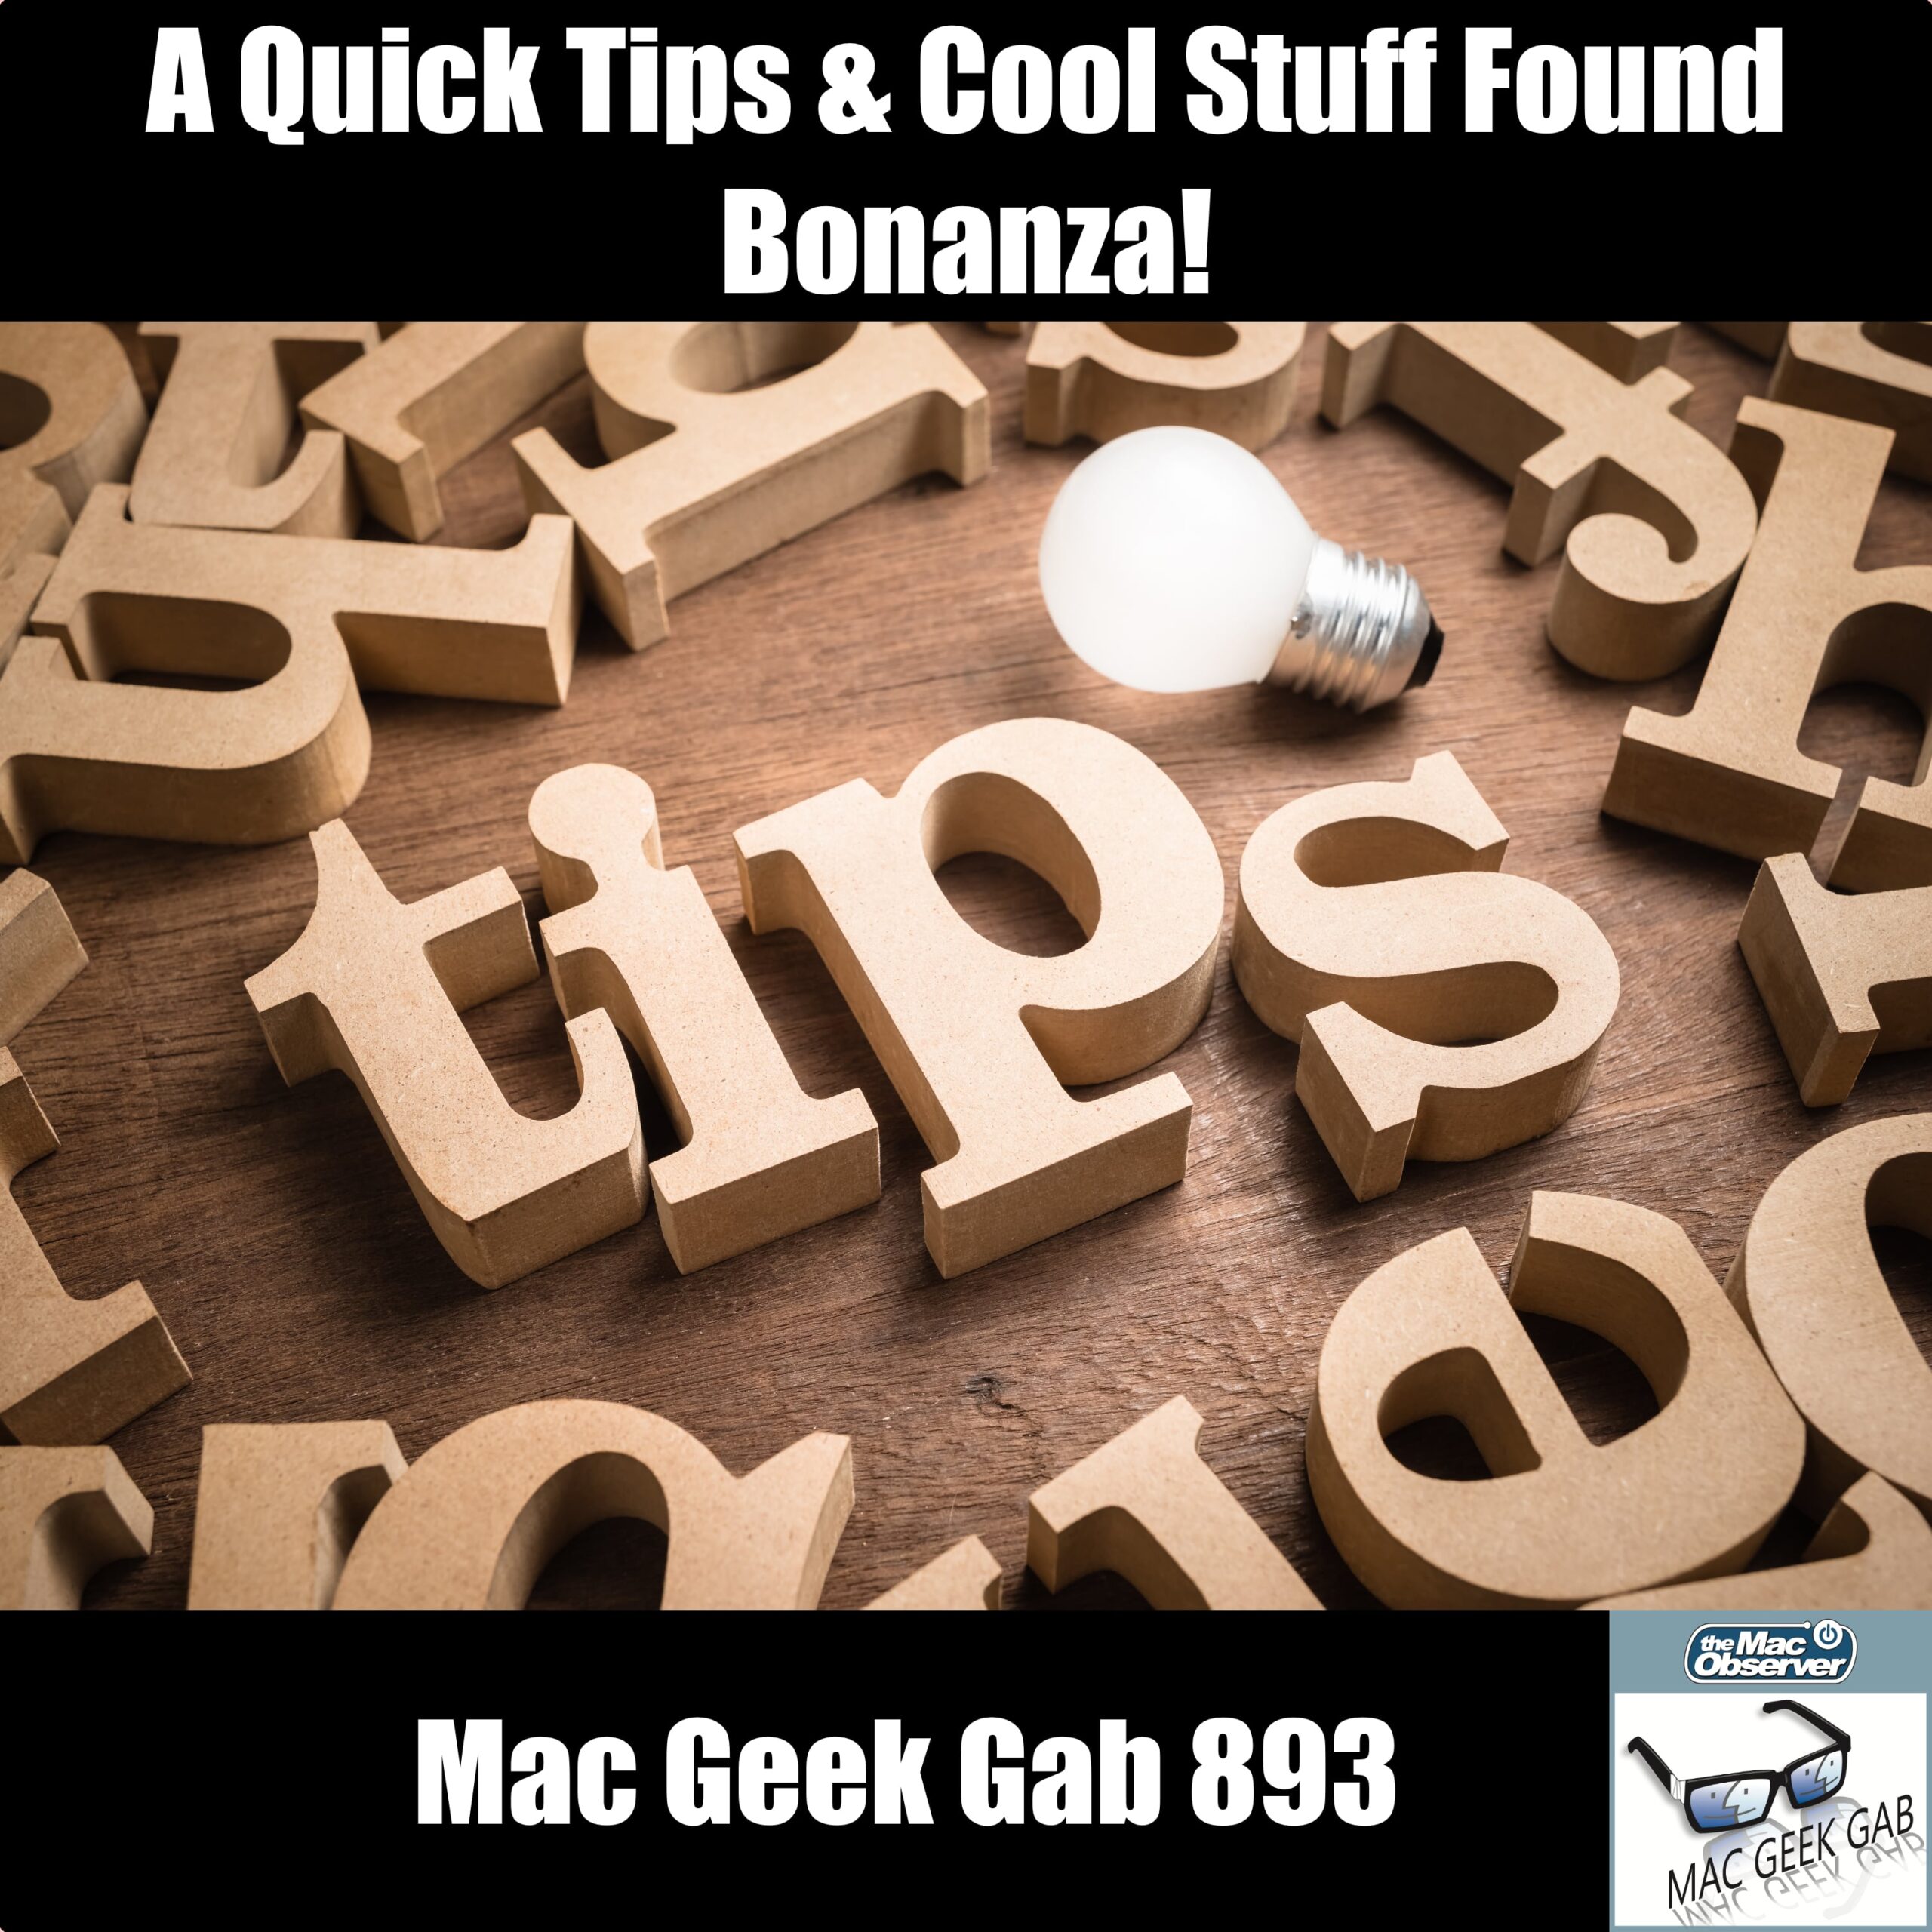 Consejos rápidos & amp;  ¡Cosas geniales encontradas Bonanza!  - Mac Geek Gab 893